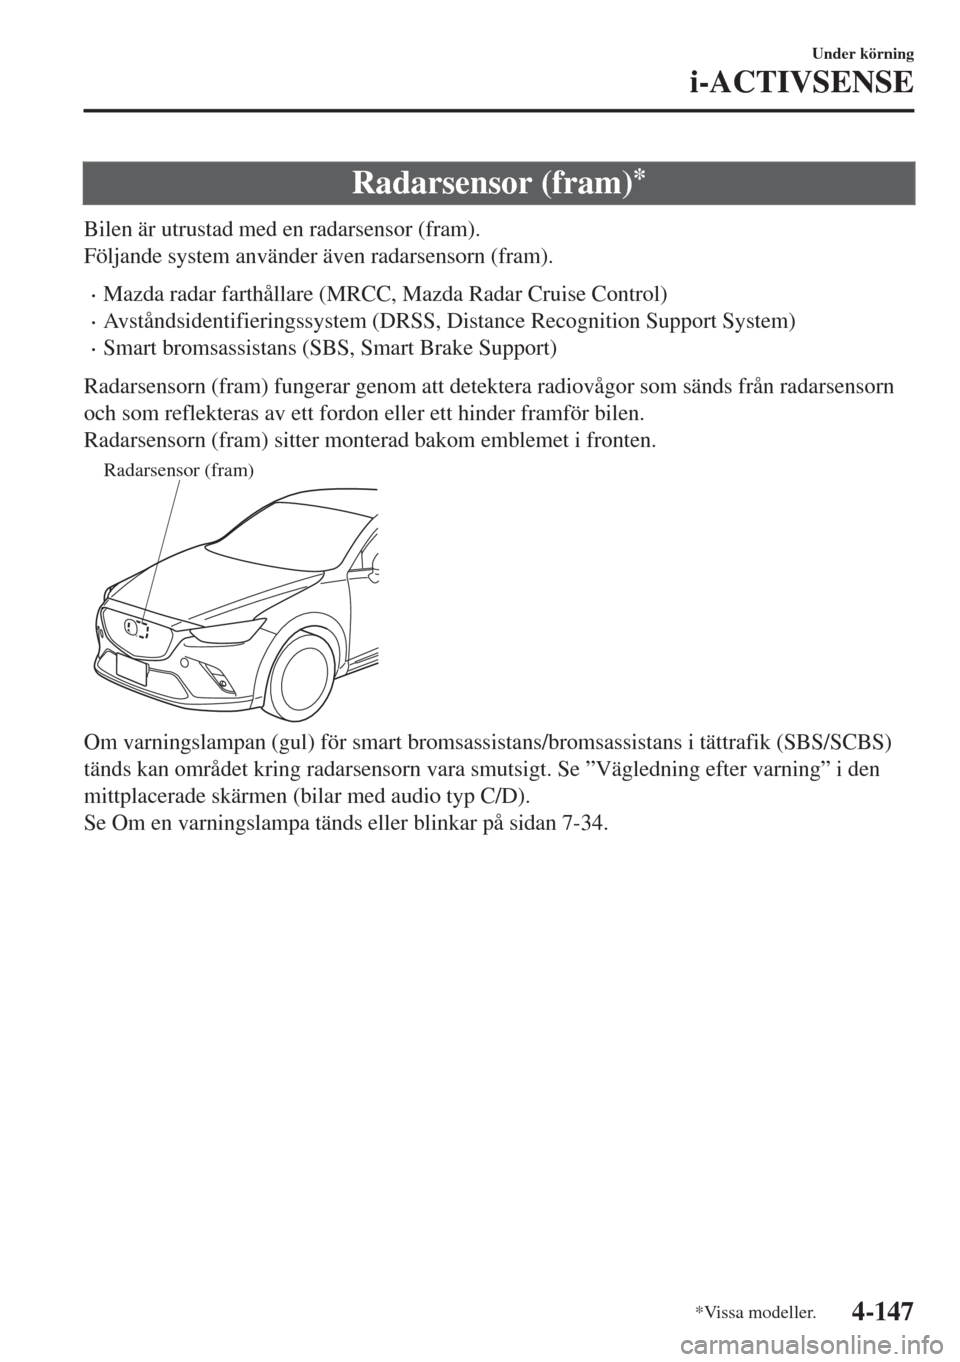 MAZDA MODEL CX-3 2015  Ägarmanual (in Swedish) Radarsensor (fram)*
Bilen är utrustad med en radarsensor (fram).
Följande system använder även radarsensorn (fram).
•Mazda radar farthållare (MRCC, Mazda Radar Cruise Control)
•Avståndsident